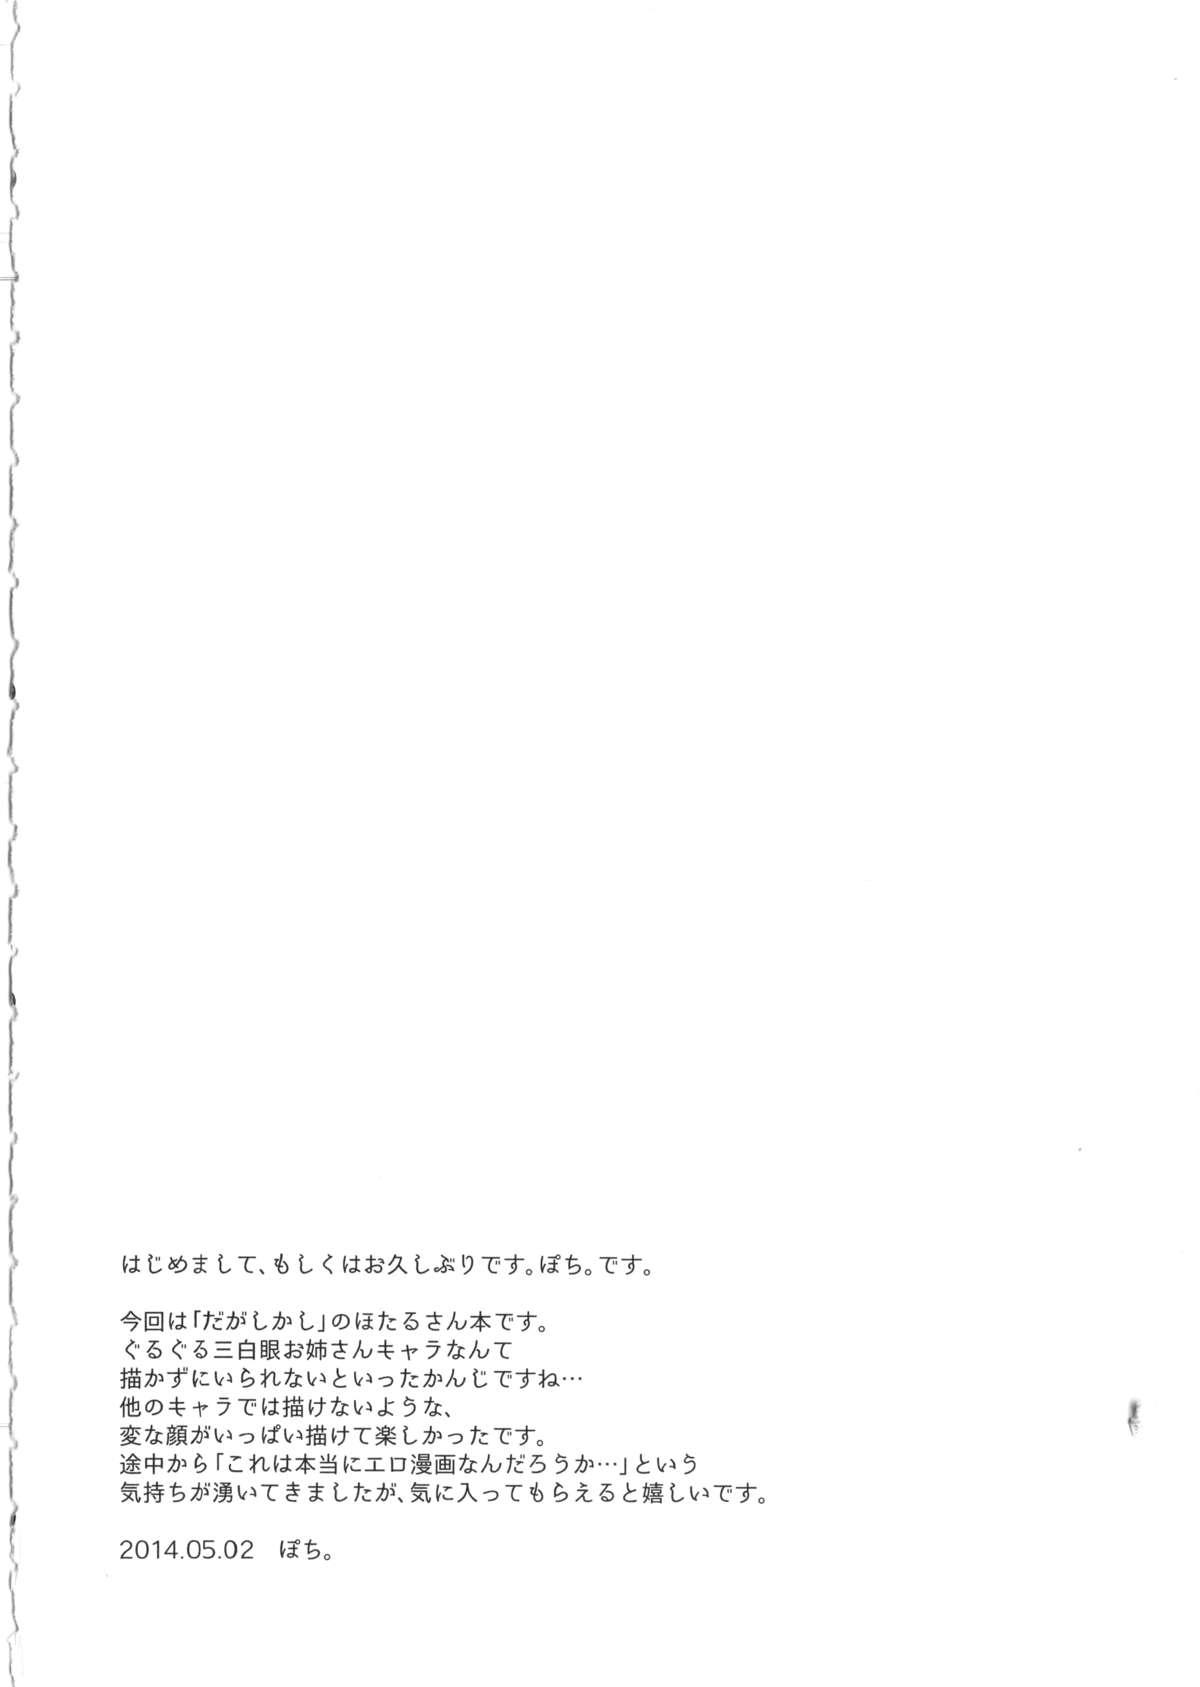 Korea Otona no dagashi - Dagashi kashi Long - Page 3